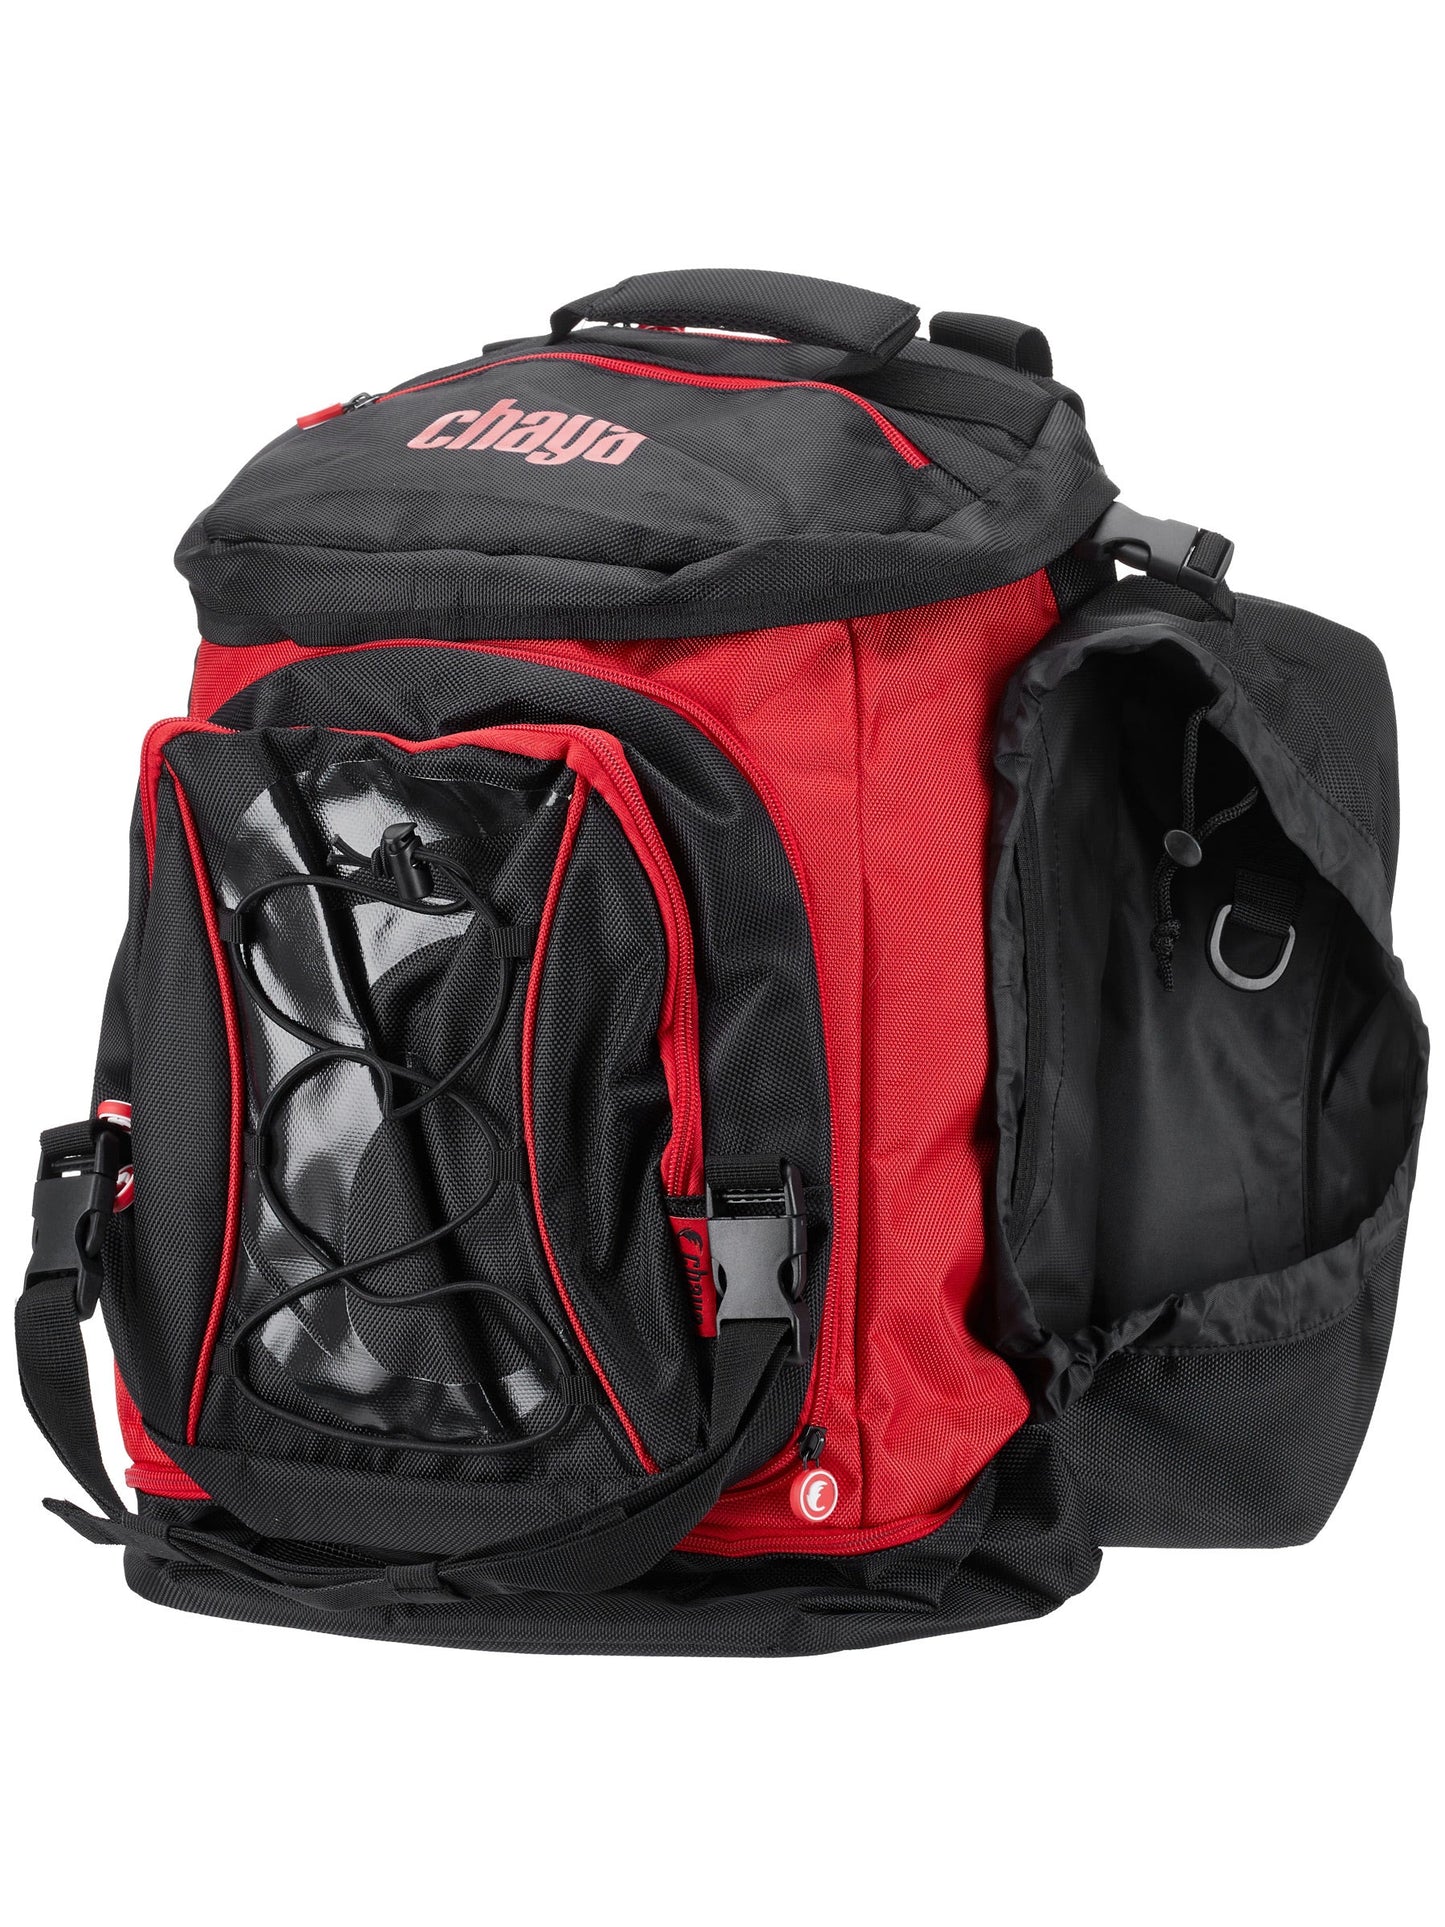 Chaya Pro Bag Backpack - zaino porta pattini a rotelle